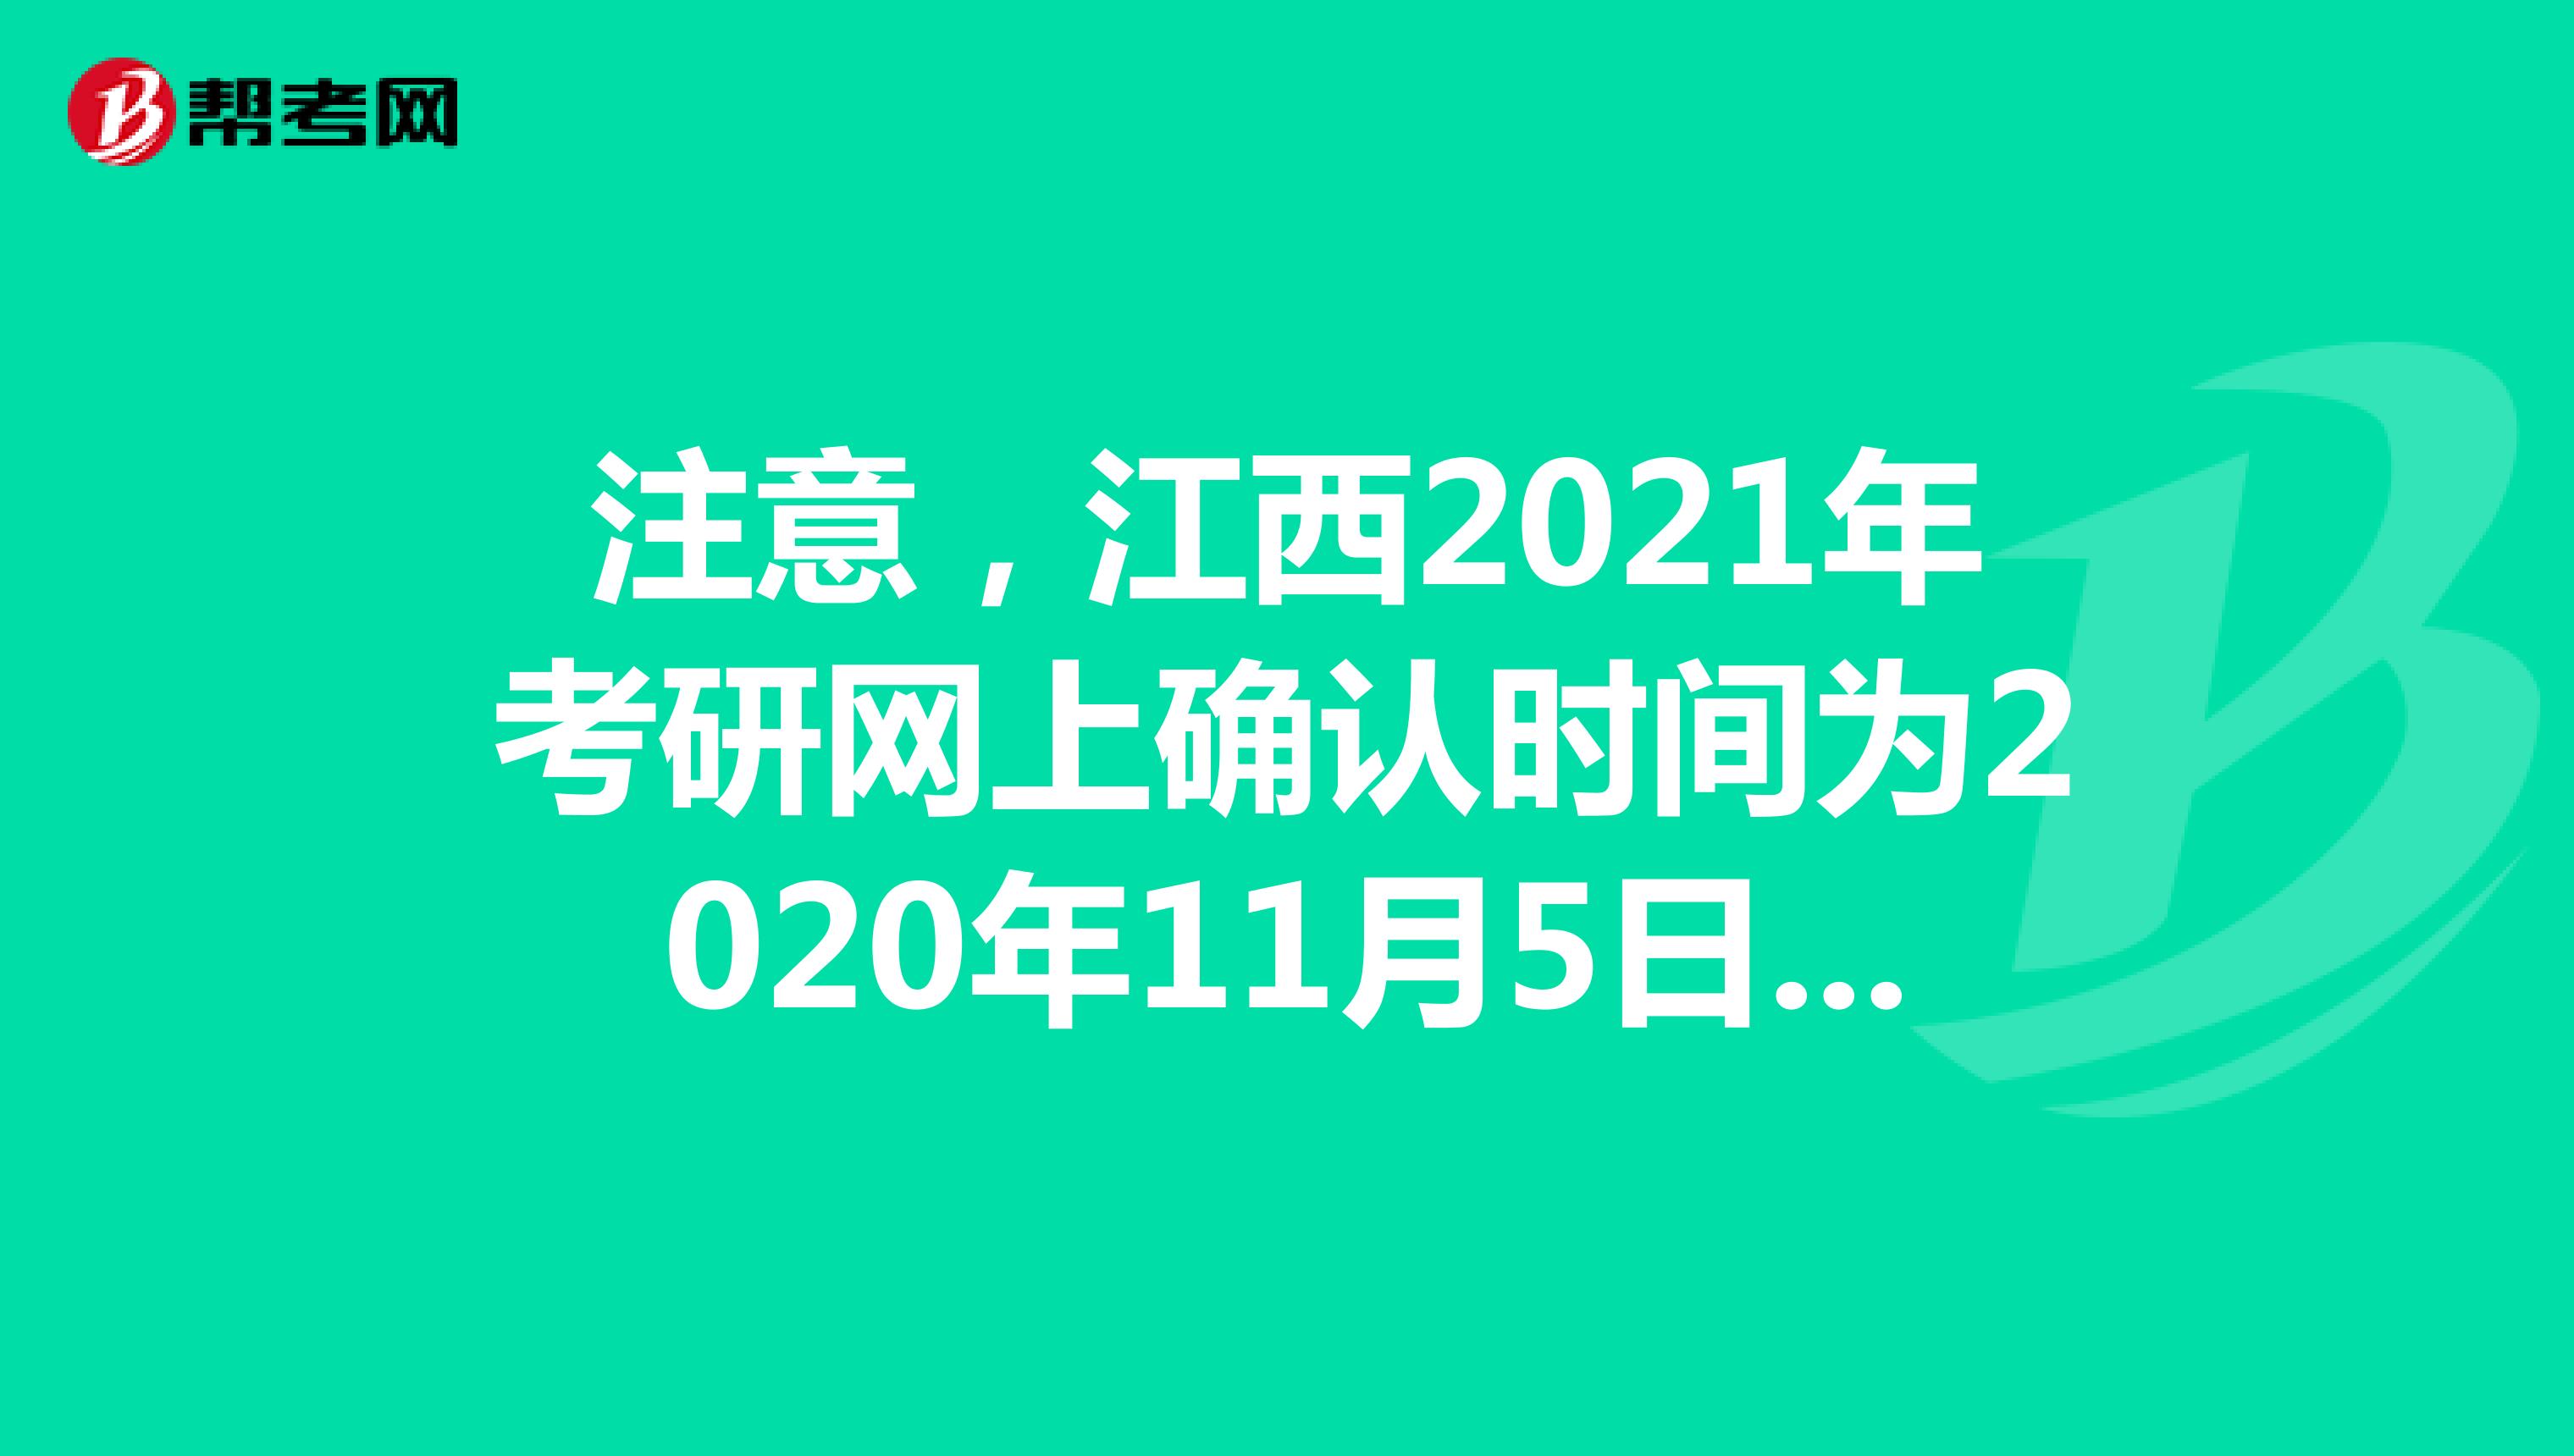 注意，江西2021年考研网上确认时间为2020年11月5日-9日